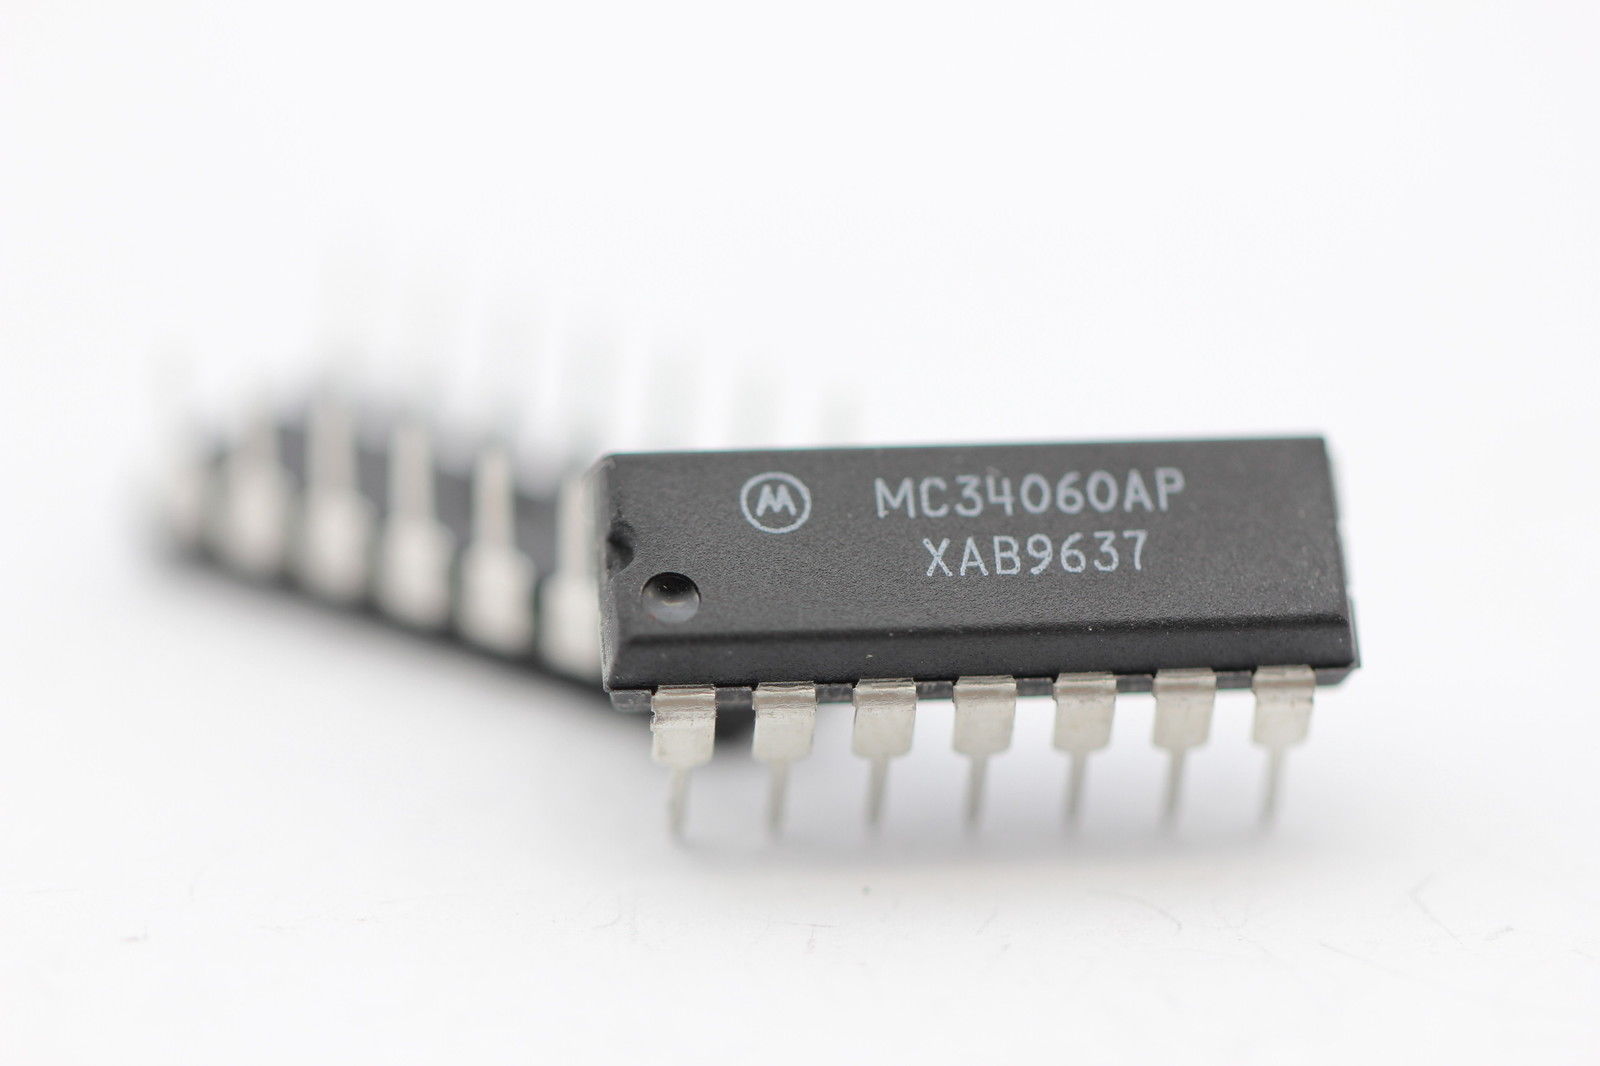 MC34060AP